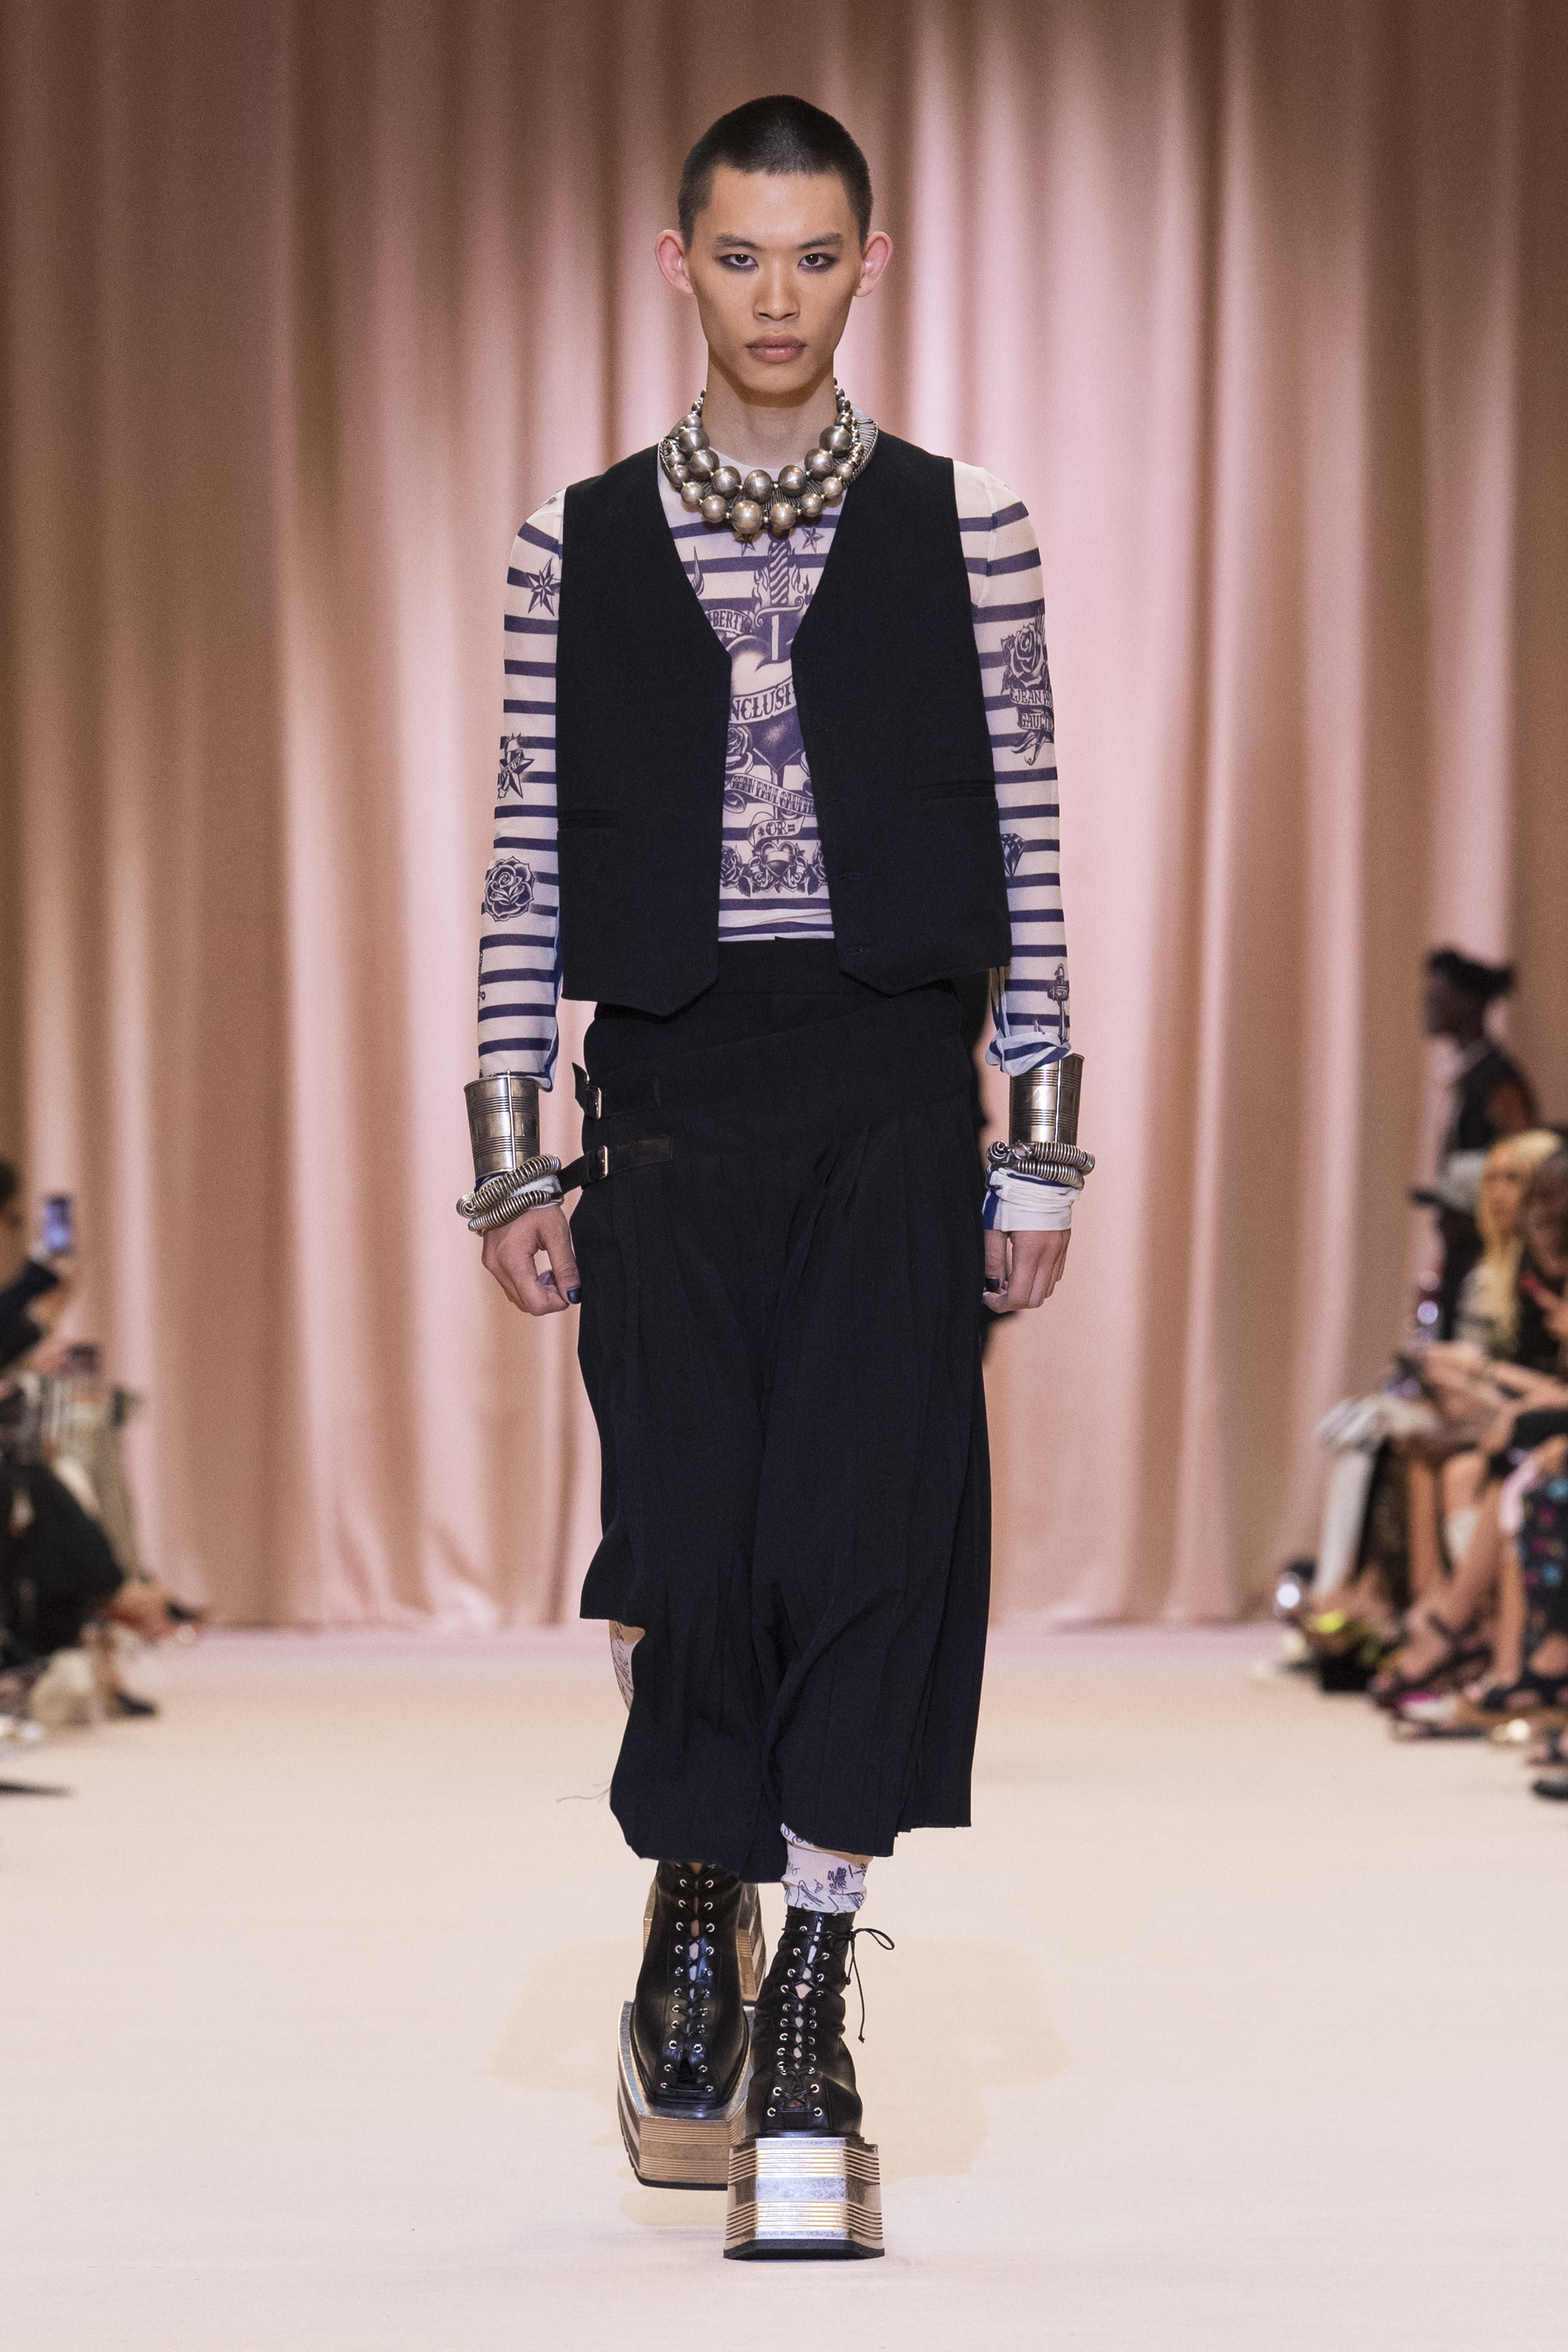 Оливье Рустен решил переосмыслить наследие Жана Поля Готье в своей новой коллекции одежды